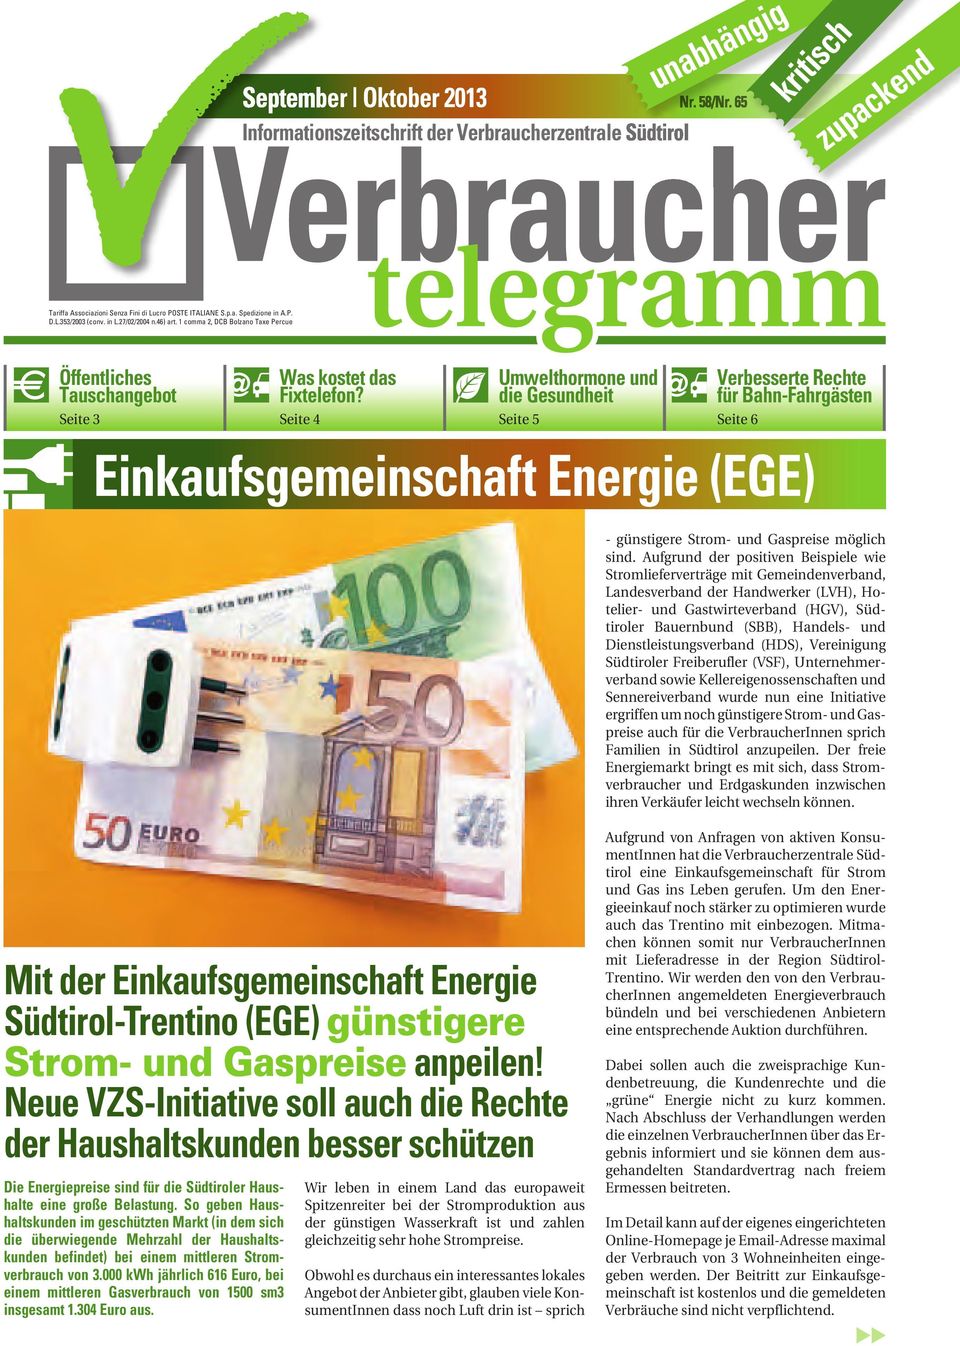 Seite 4 Umwelthormone und die Gesundheit Seite 5 Verbesserte Rechte für Bahn-Fahrgästen Seite 6 Einkaufsgemeinschaft Energie (EGE) - günstigere Strom- und Gaspreise möglich sind.